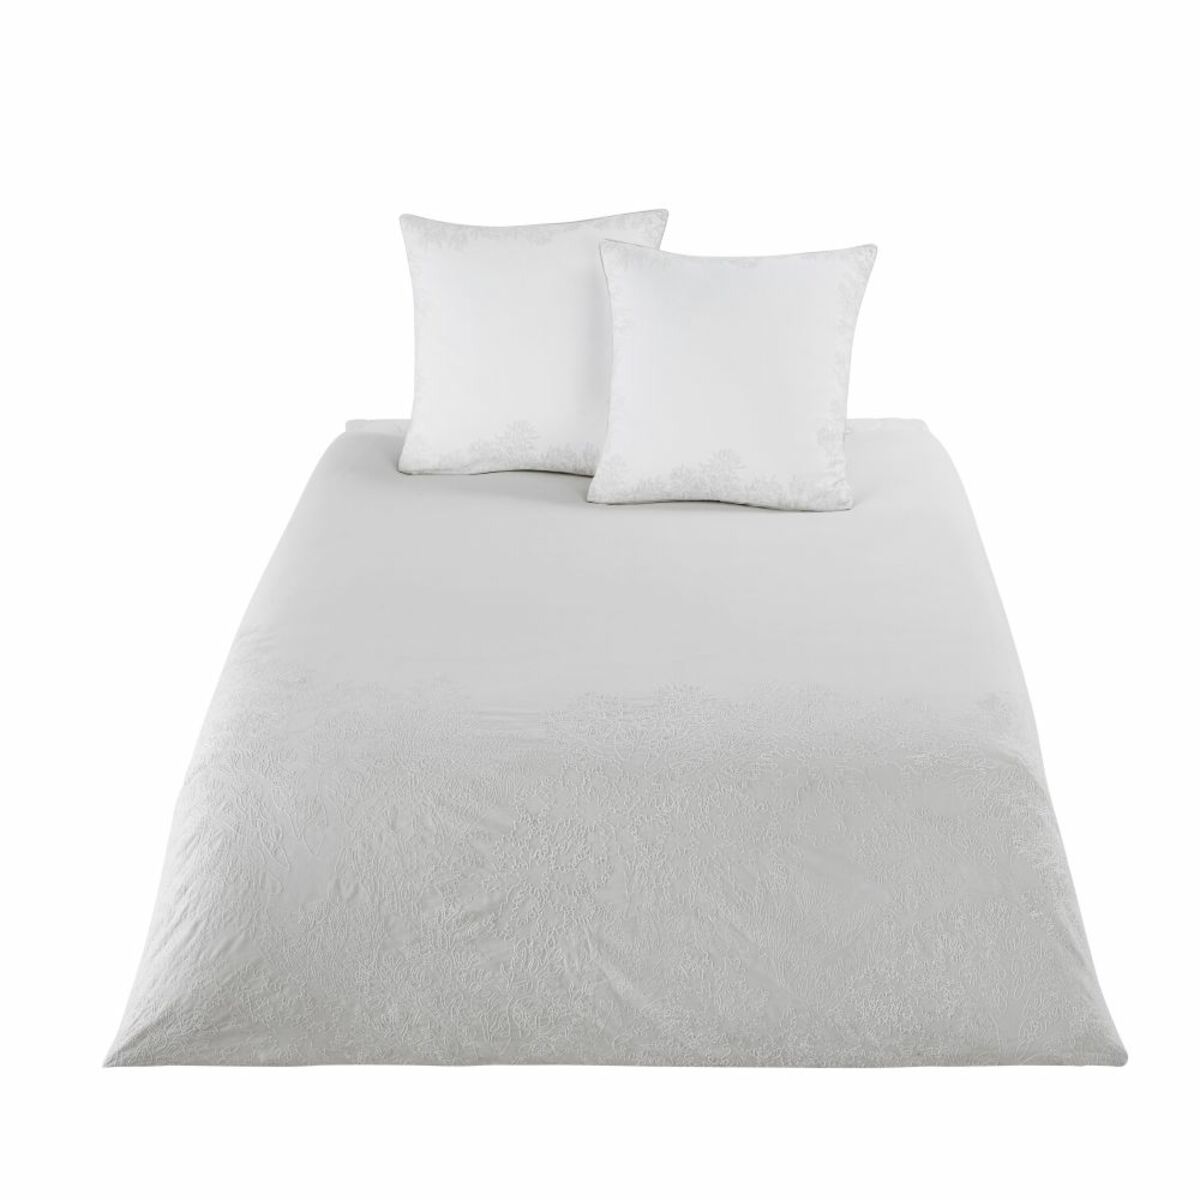 Juego de cama de algodón beige con motivos bordados blancos 240x260